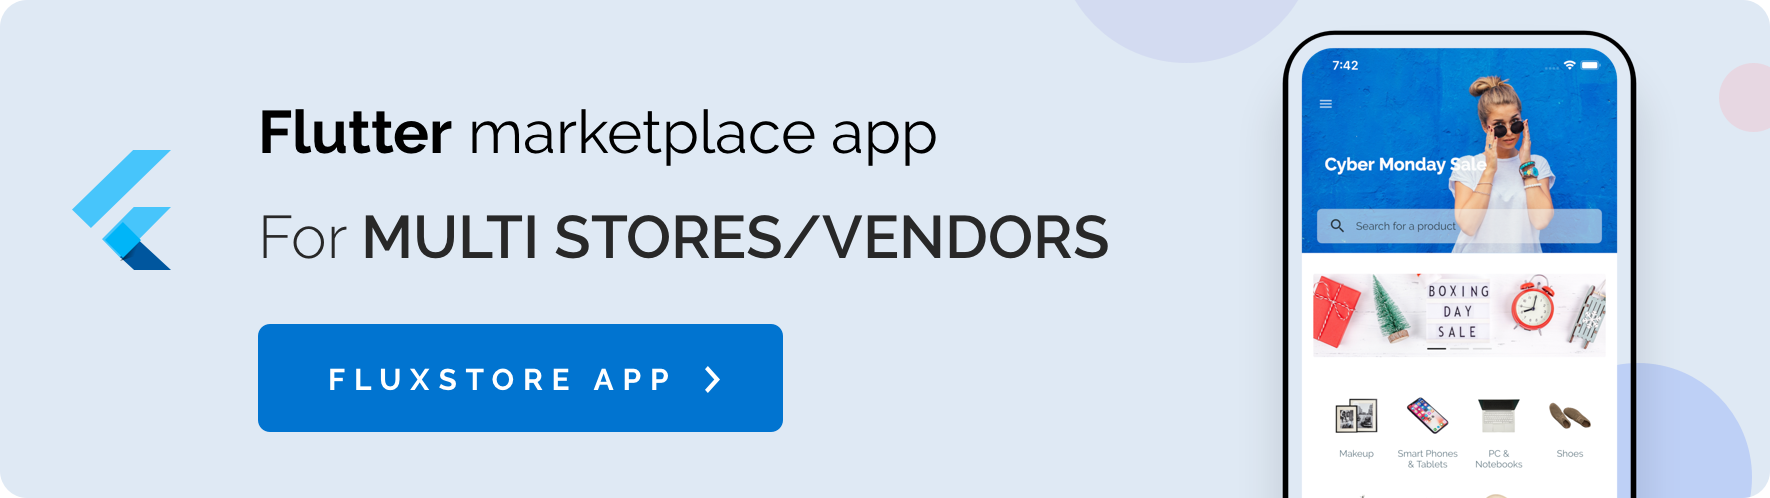 Fluxstore Pro - Flutter E-commerce Full App for Magento, Opencart, and Woocommerce - 32